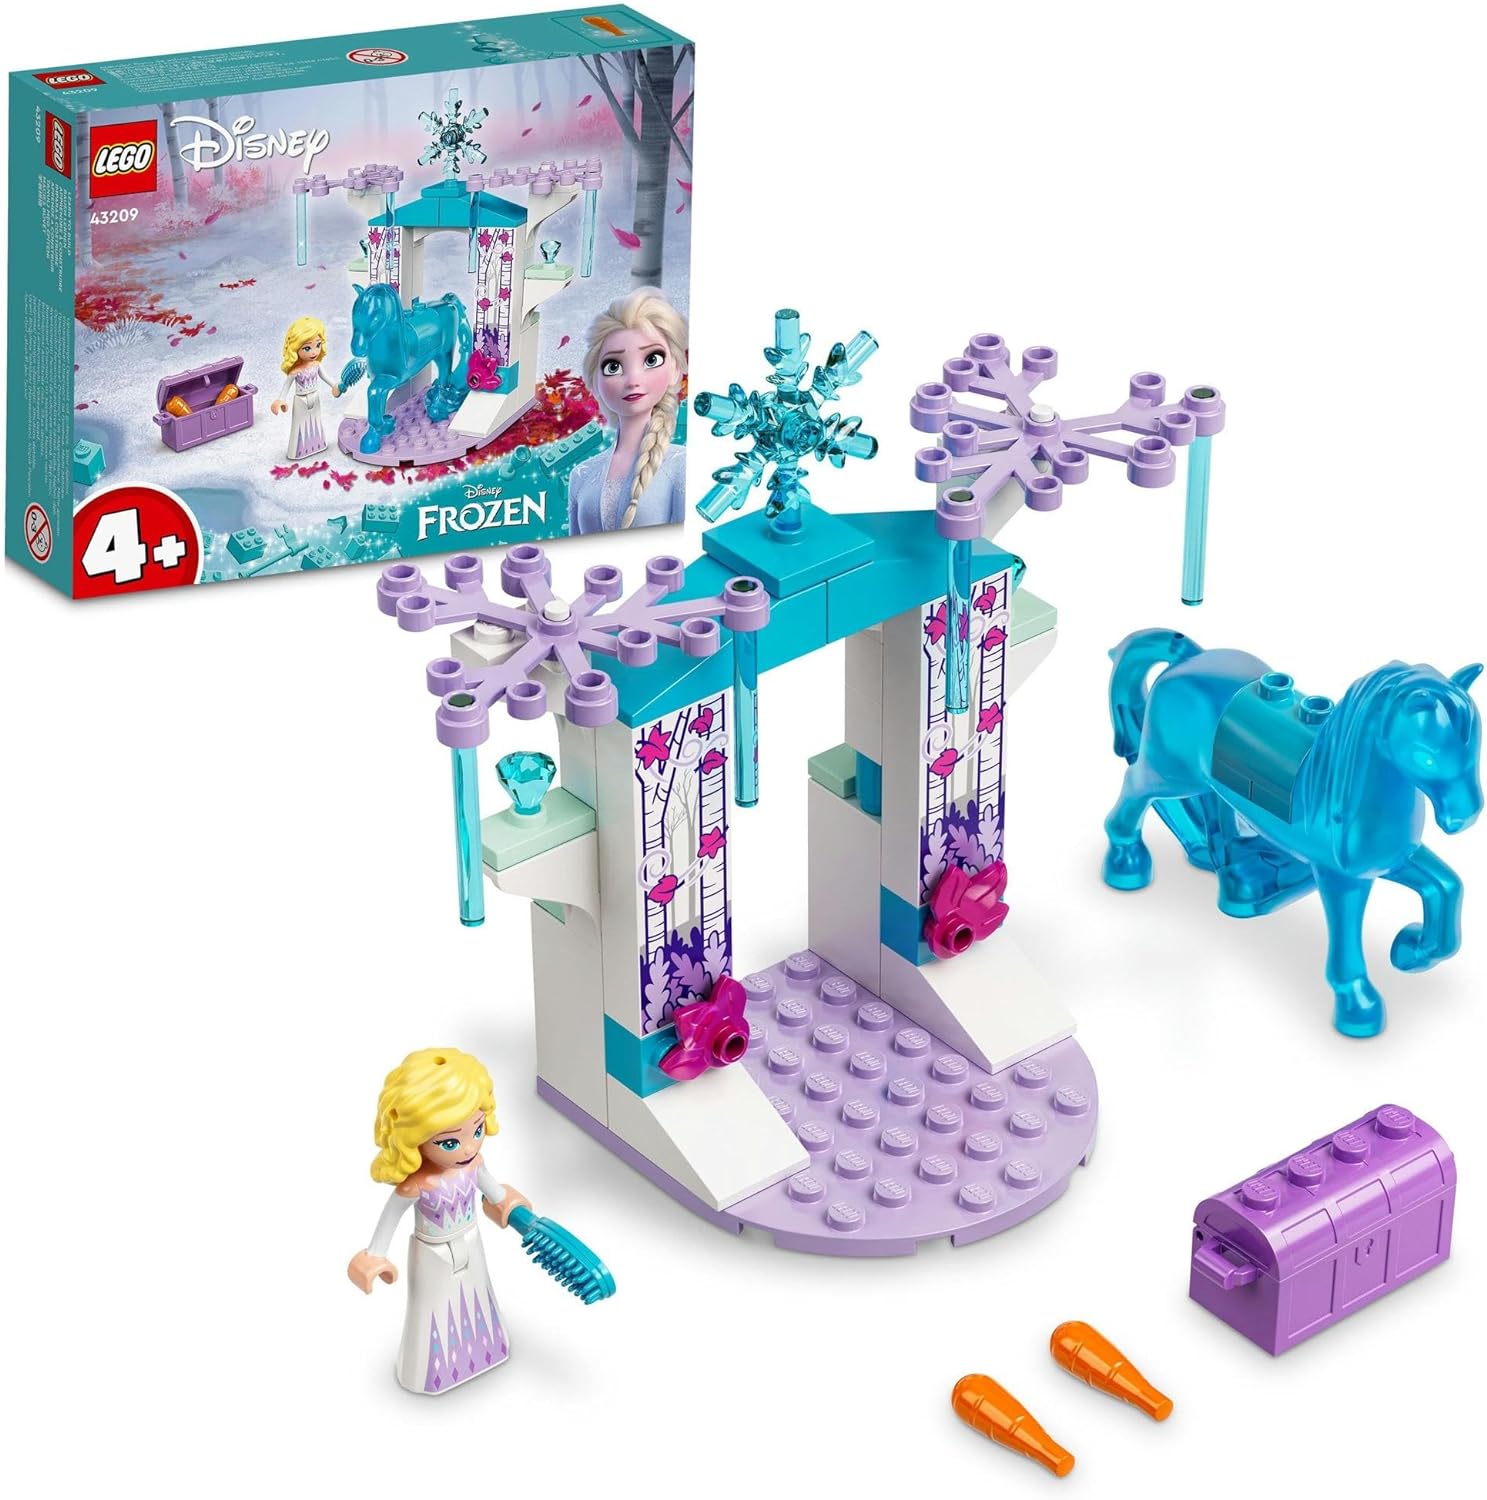 レゴ ディズニープリンセス レゴ(LEGO) ディズニープリンセス エルサとノックの氷の馬小屋 43209